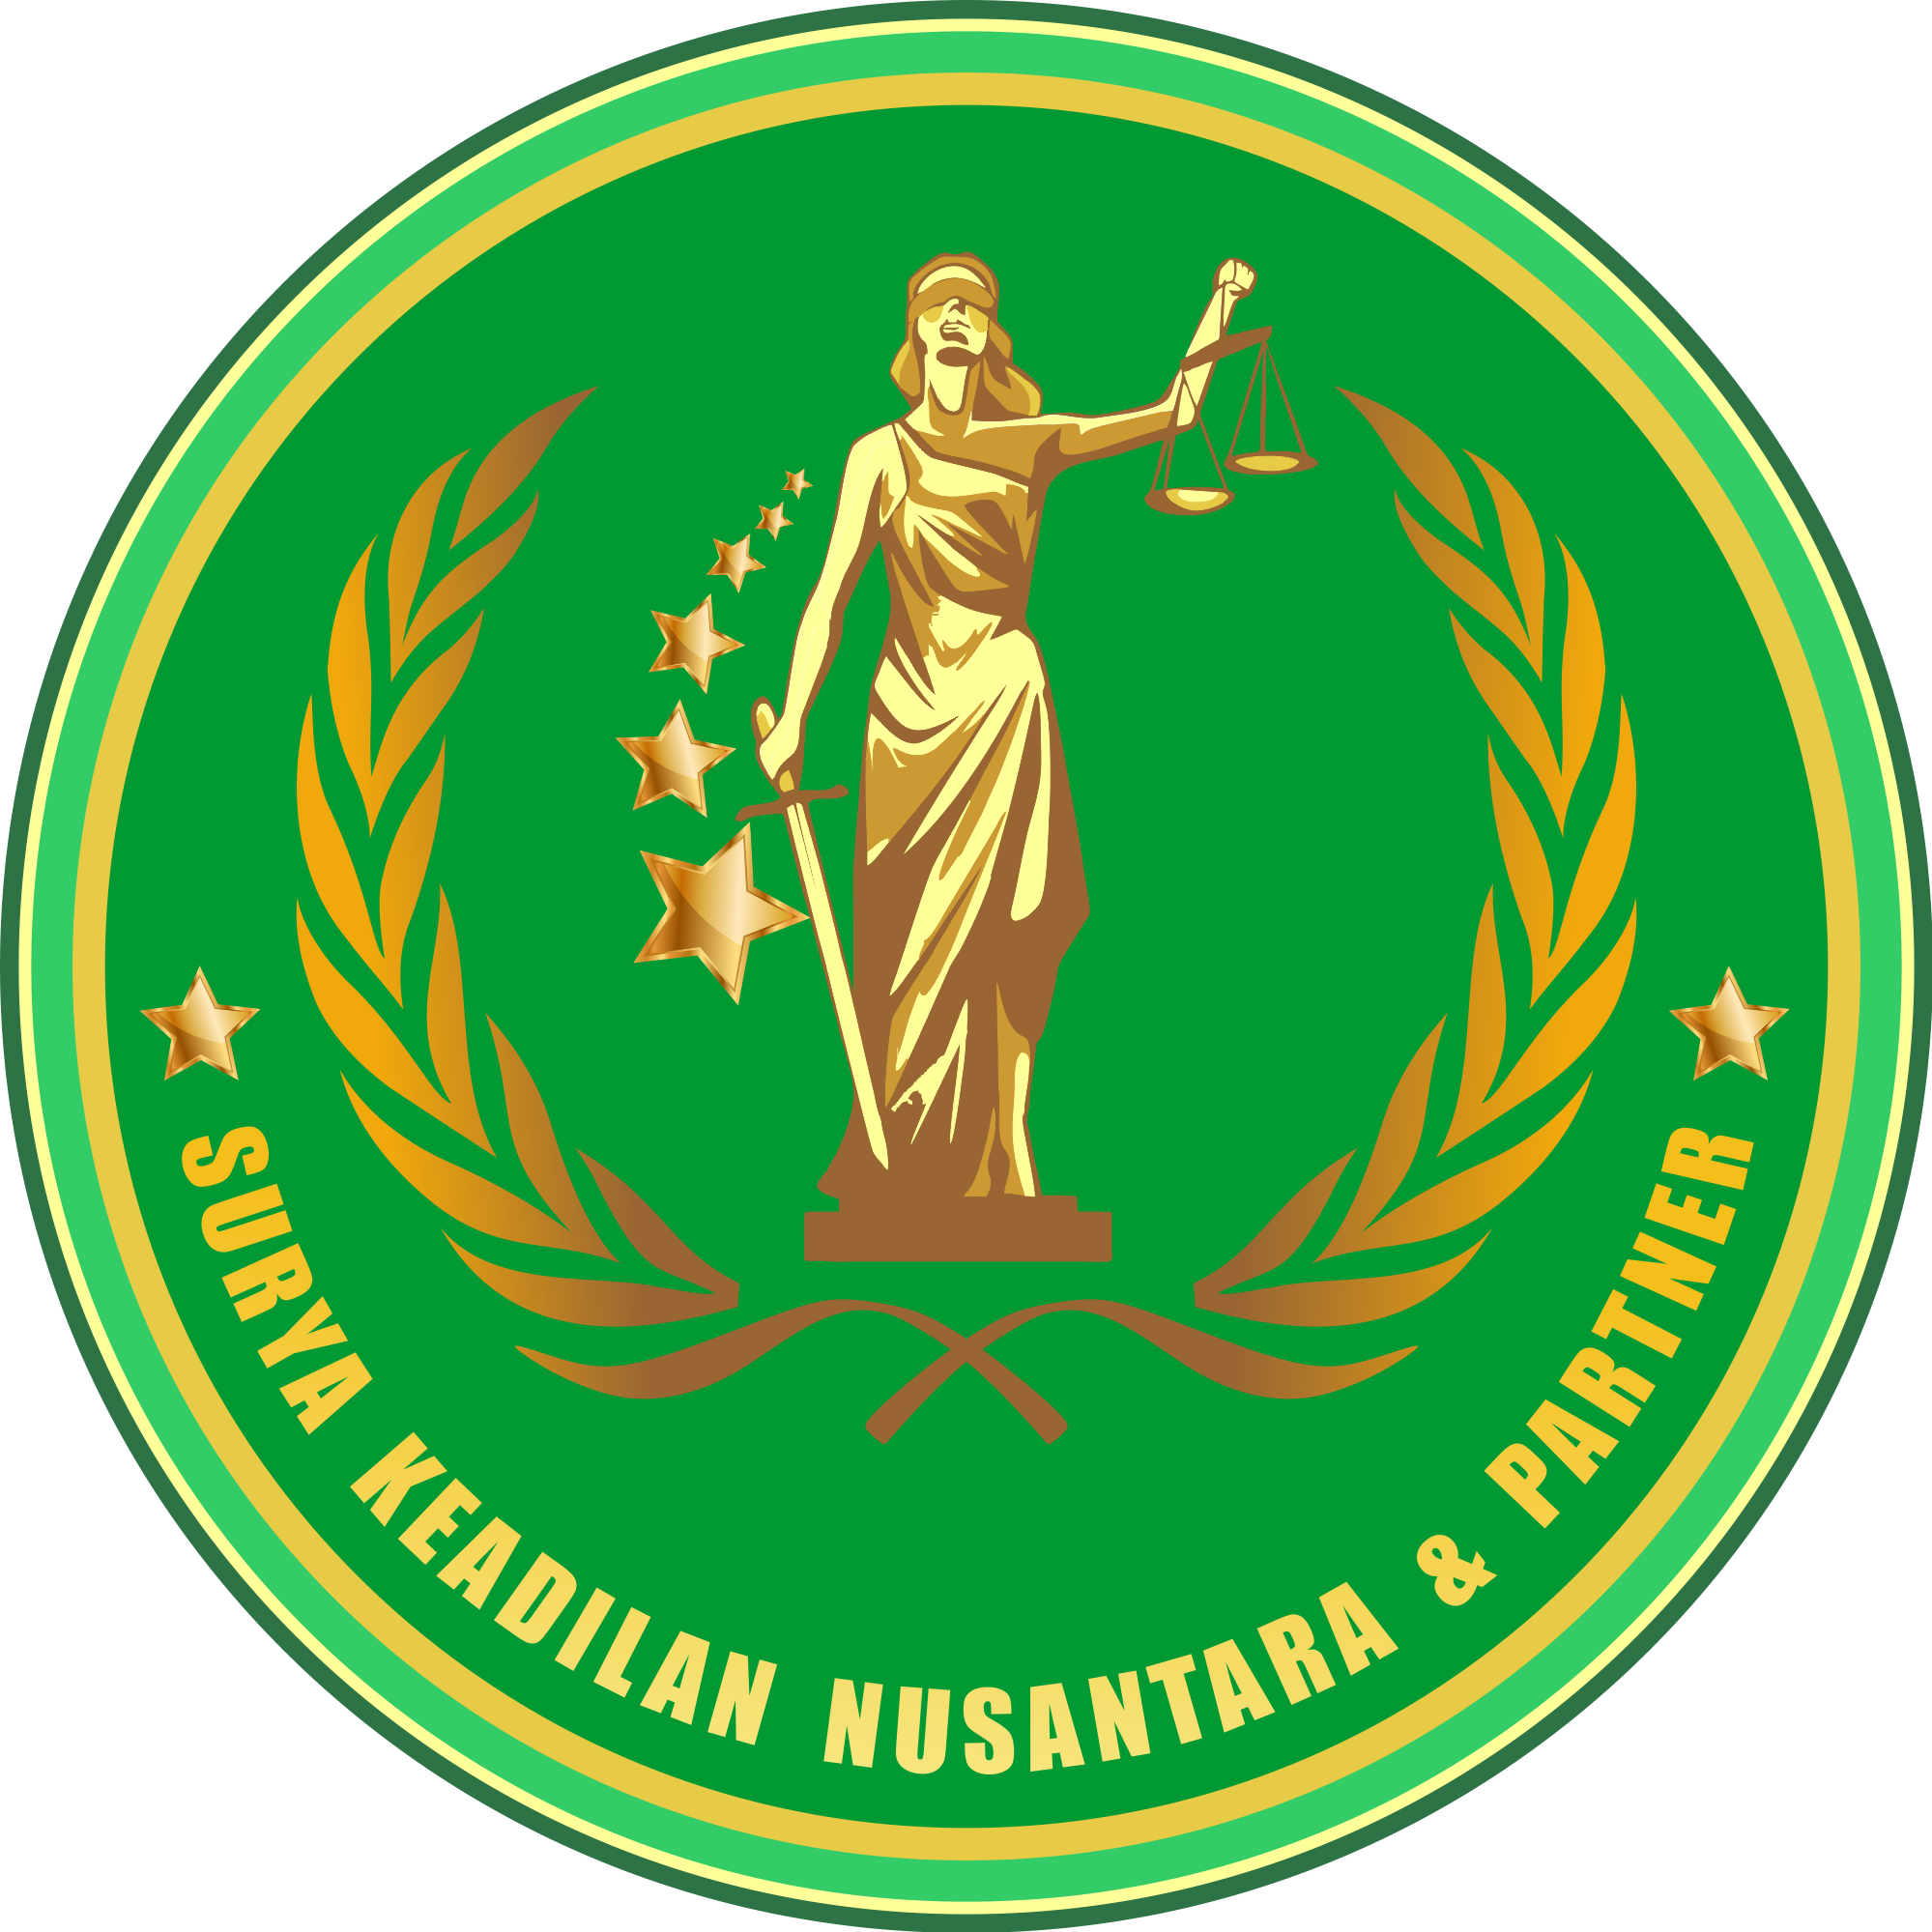 Surya Keadilan Nusantara